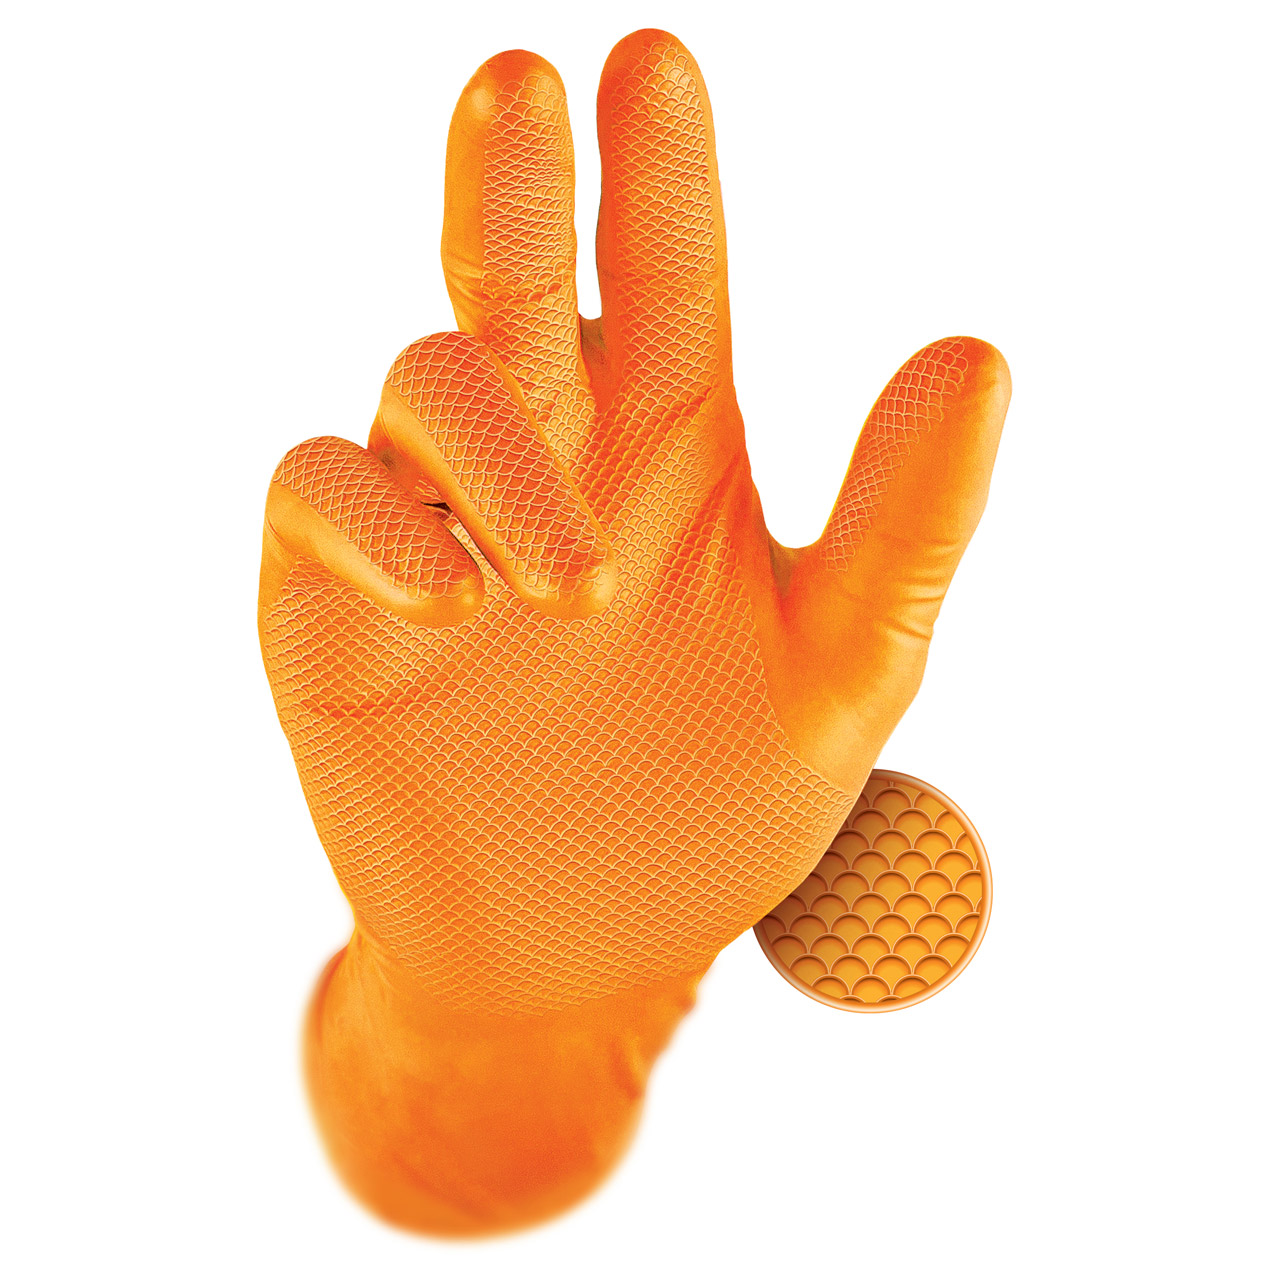 GRIPPAZ 246 Schutzhandschuhe NITRIL Handschuhe ORANGE Größe XL (50 Stück)